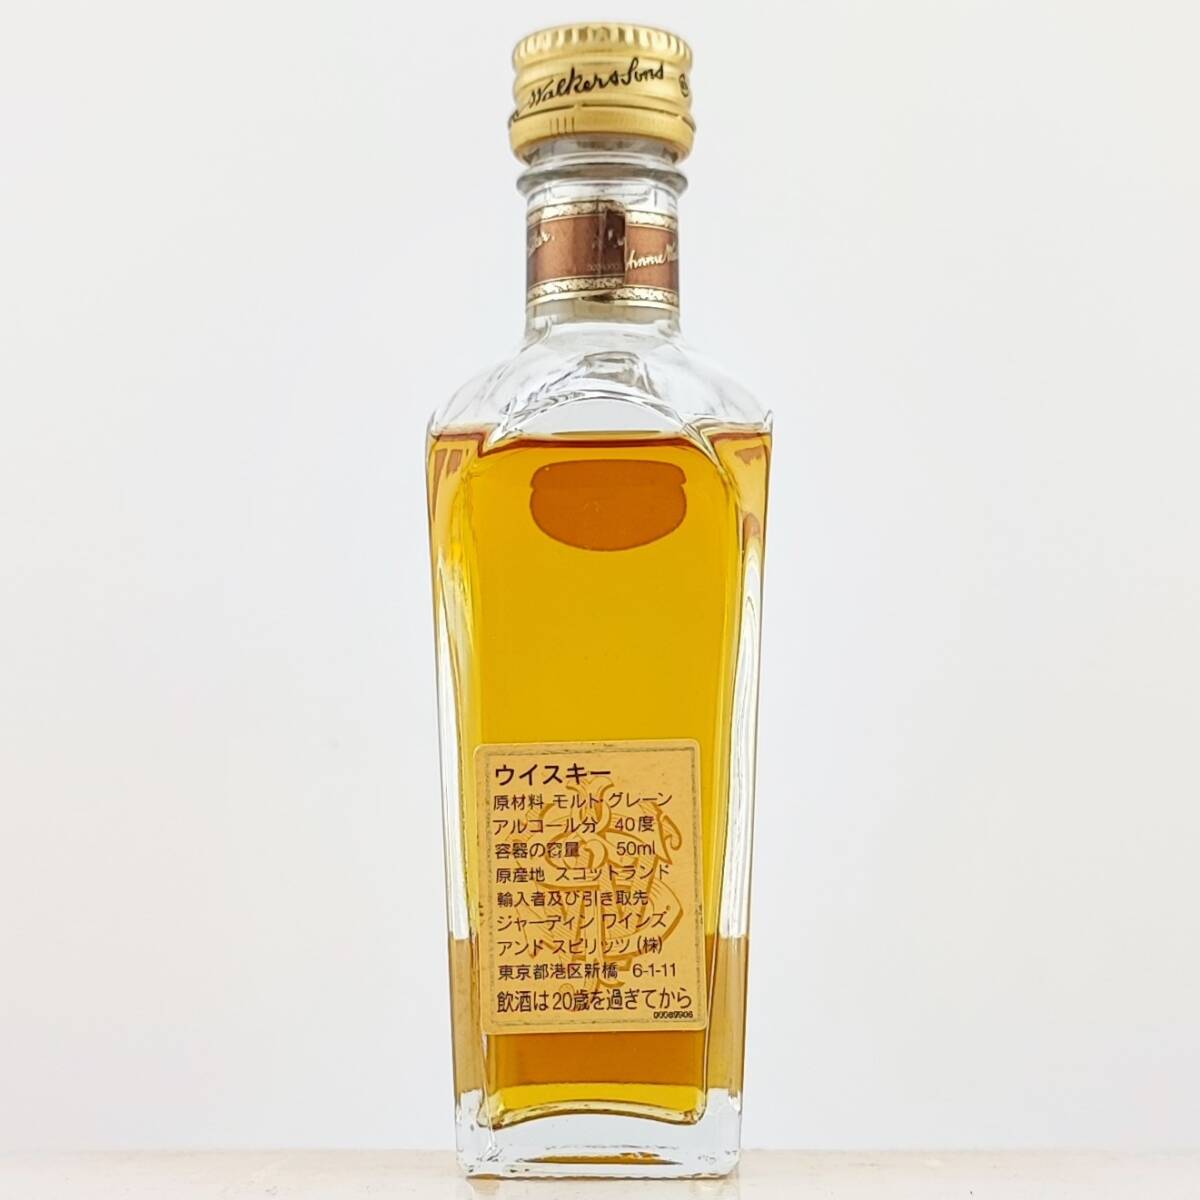 【全国送料無料】Johnnie Walker 1820 Special Blend Exceptionally Smooth Old Scotch Whisky 40度 50ml【ジョニーウォーカー】の画像4